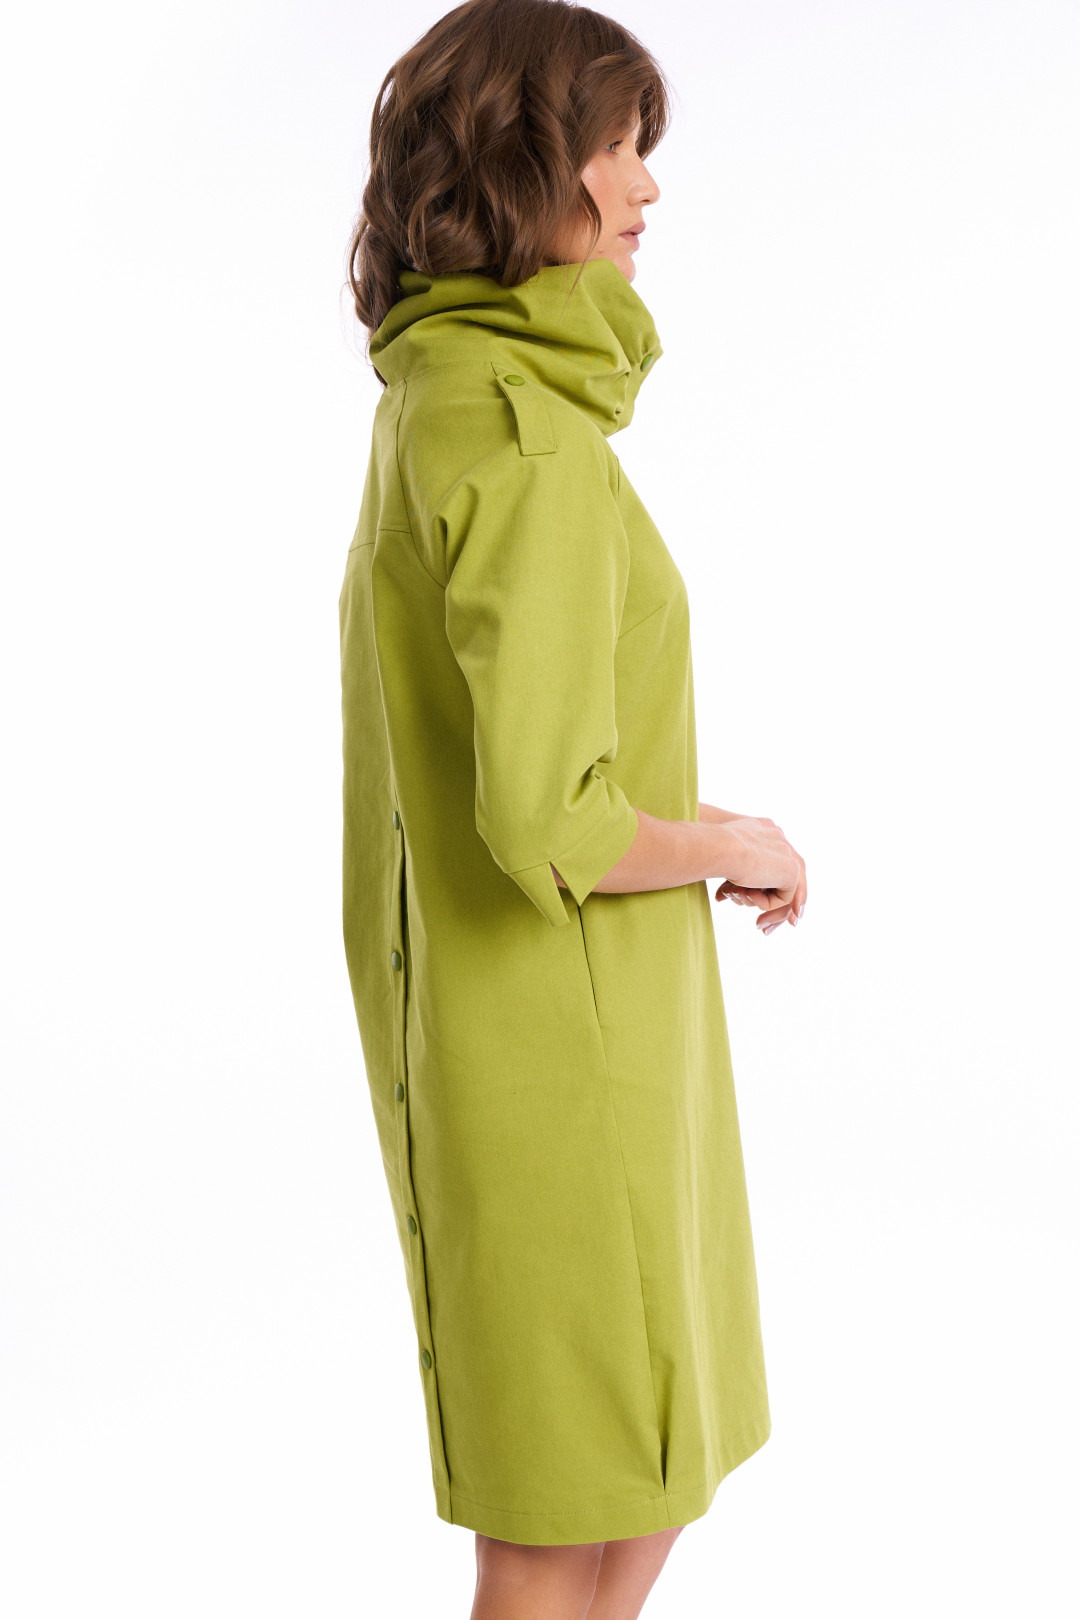 Платье KaVari 1008.1 зеленое яблоко